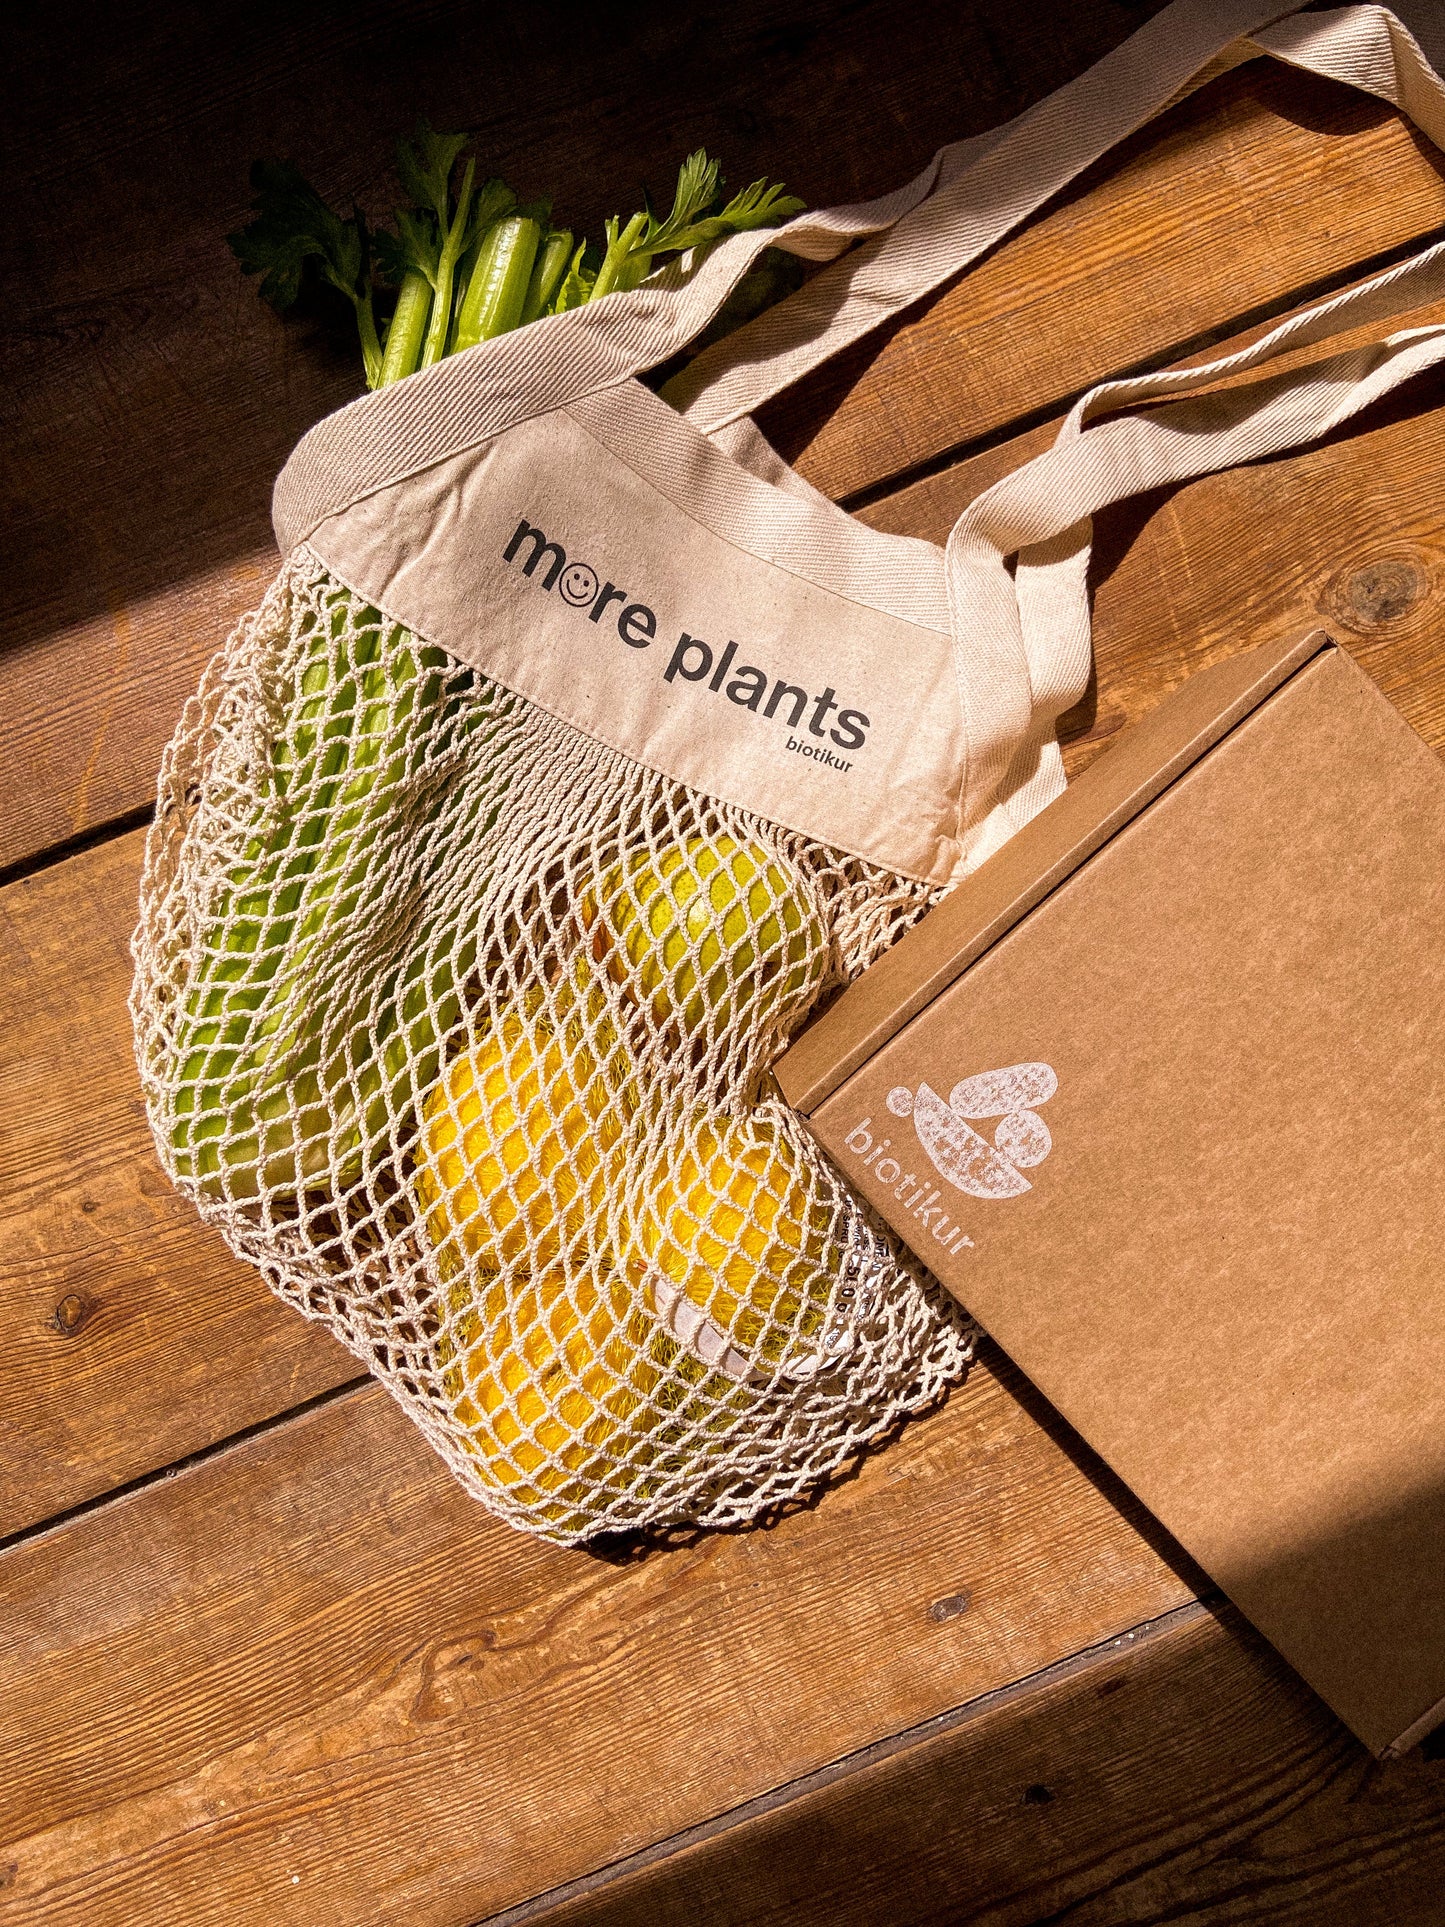 Obst- und Gemüsemarkttasche "mehr Pflanzen